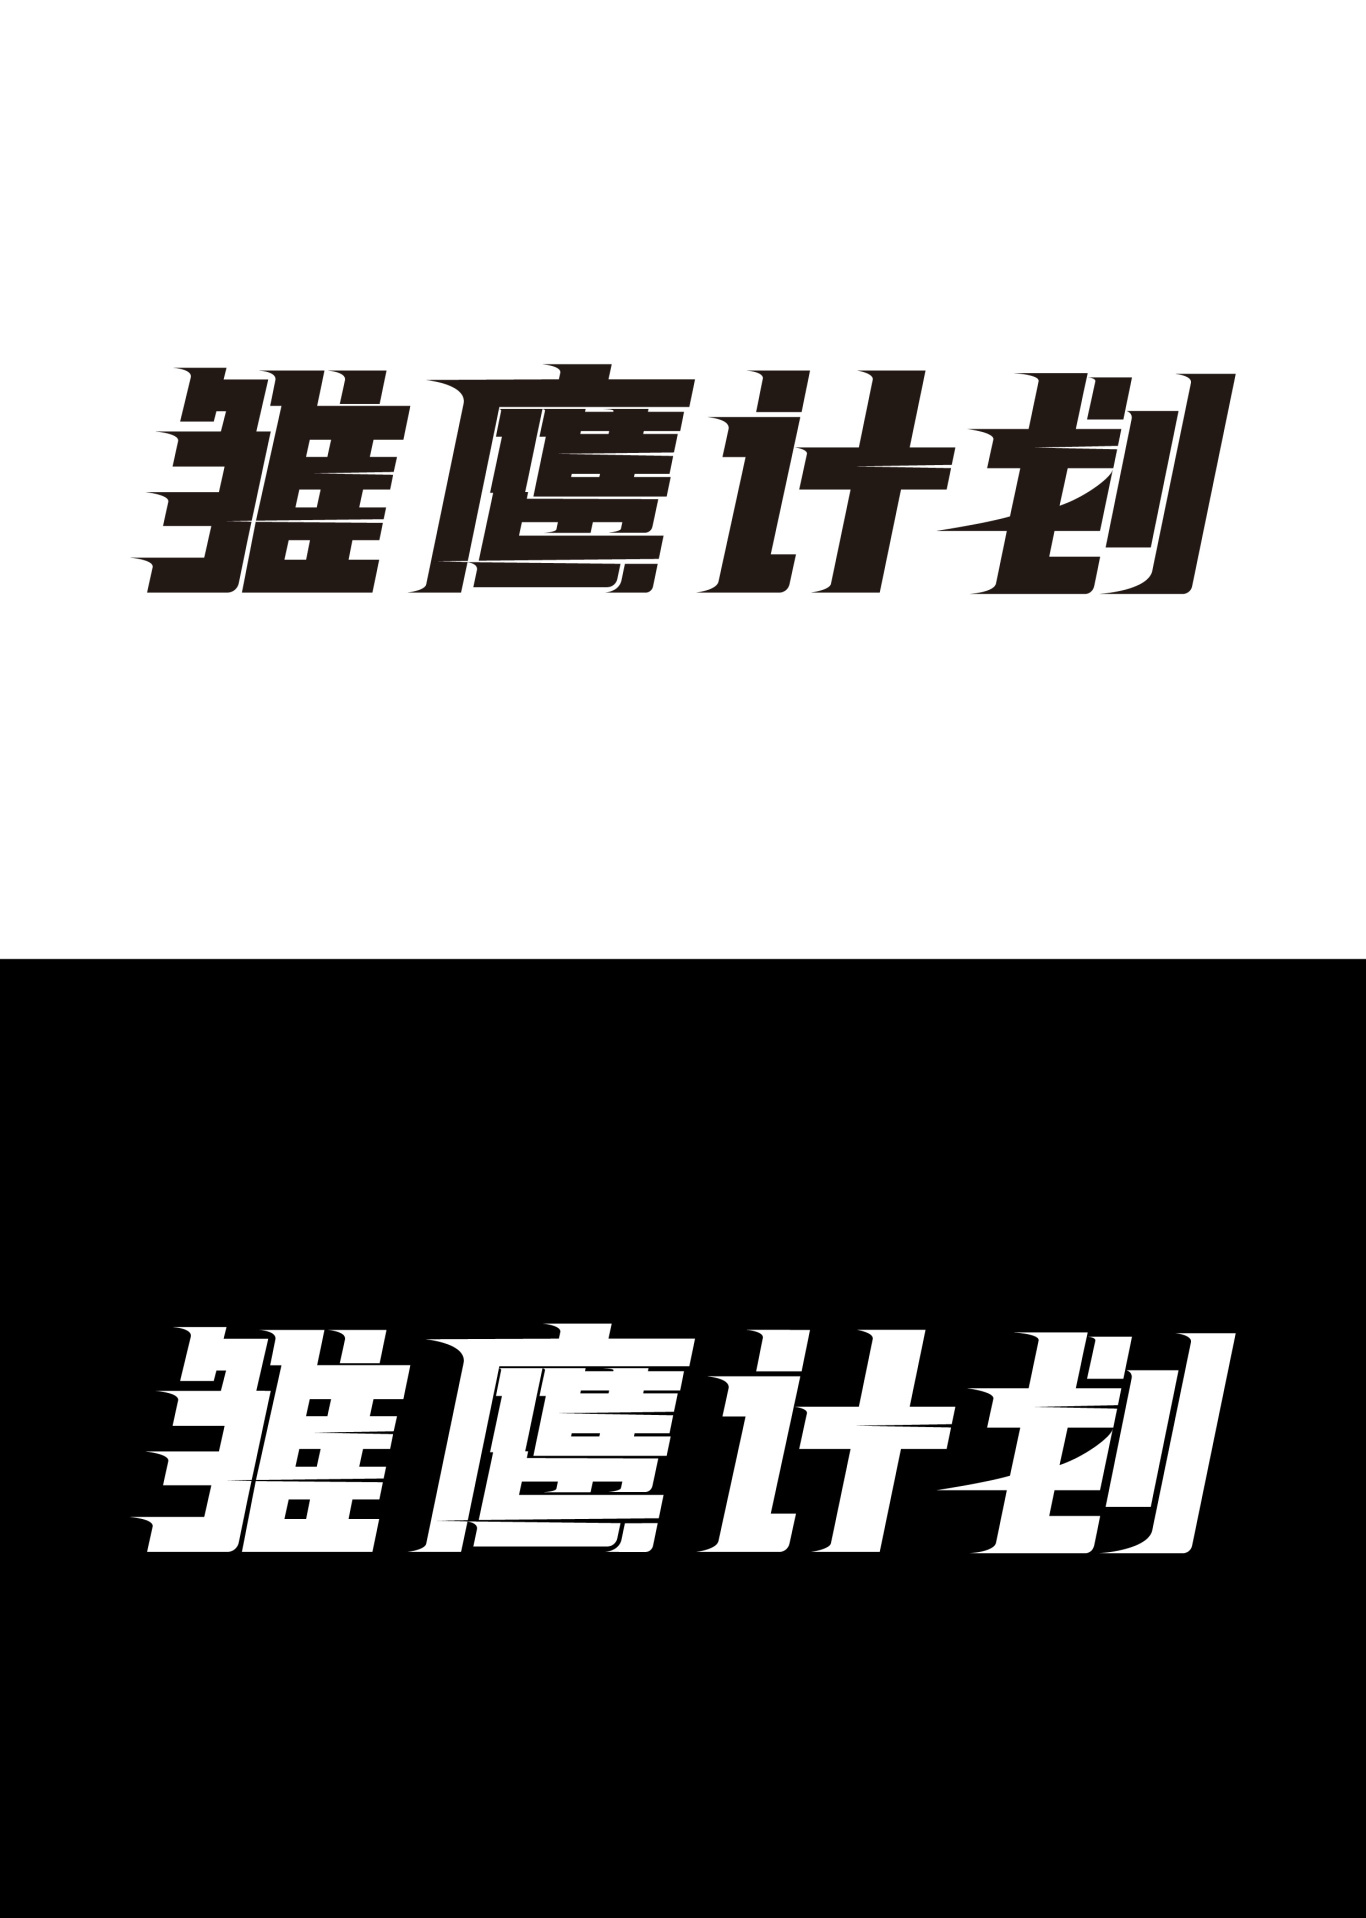 北京首鋼體育雛鷹計劃活動標志設計圖1